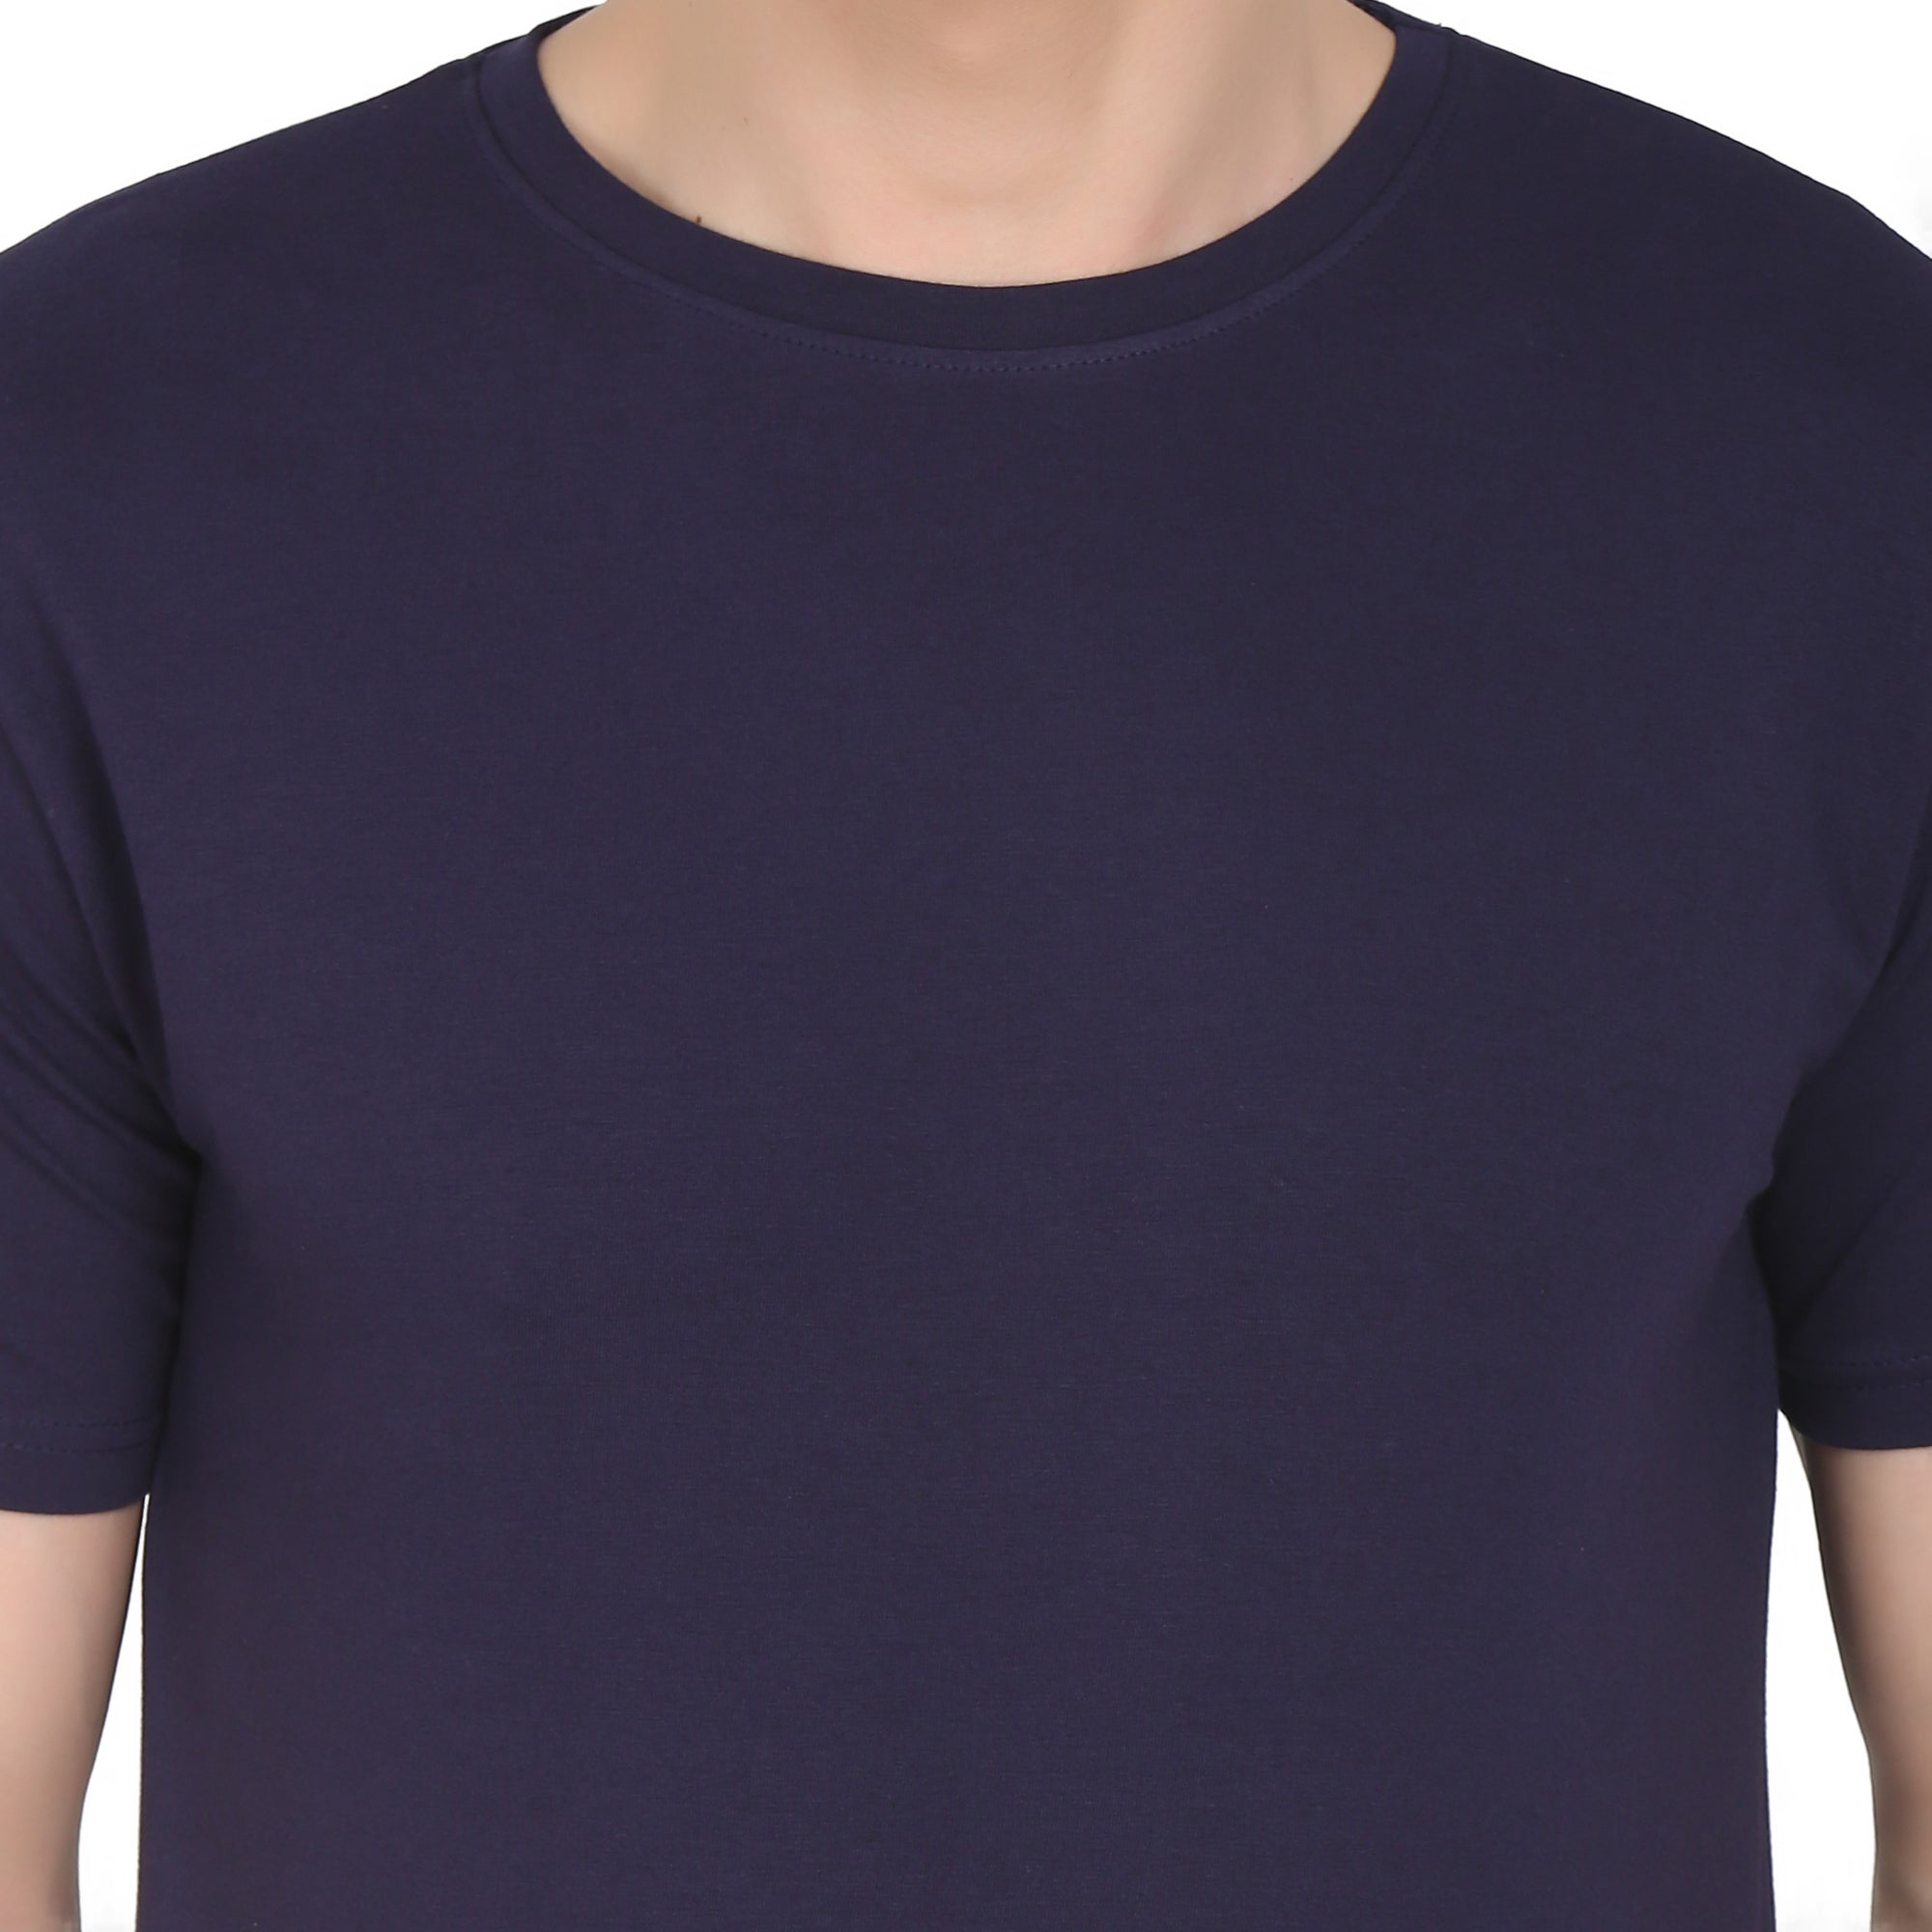 Men Four Way Stretch Cotton Plain T-shirt - Navy Blue Colour